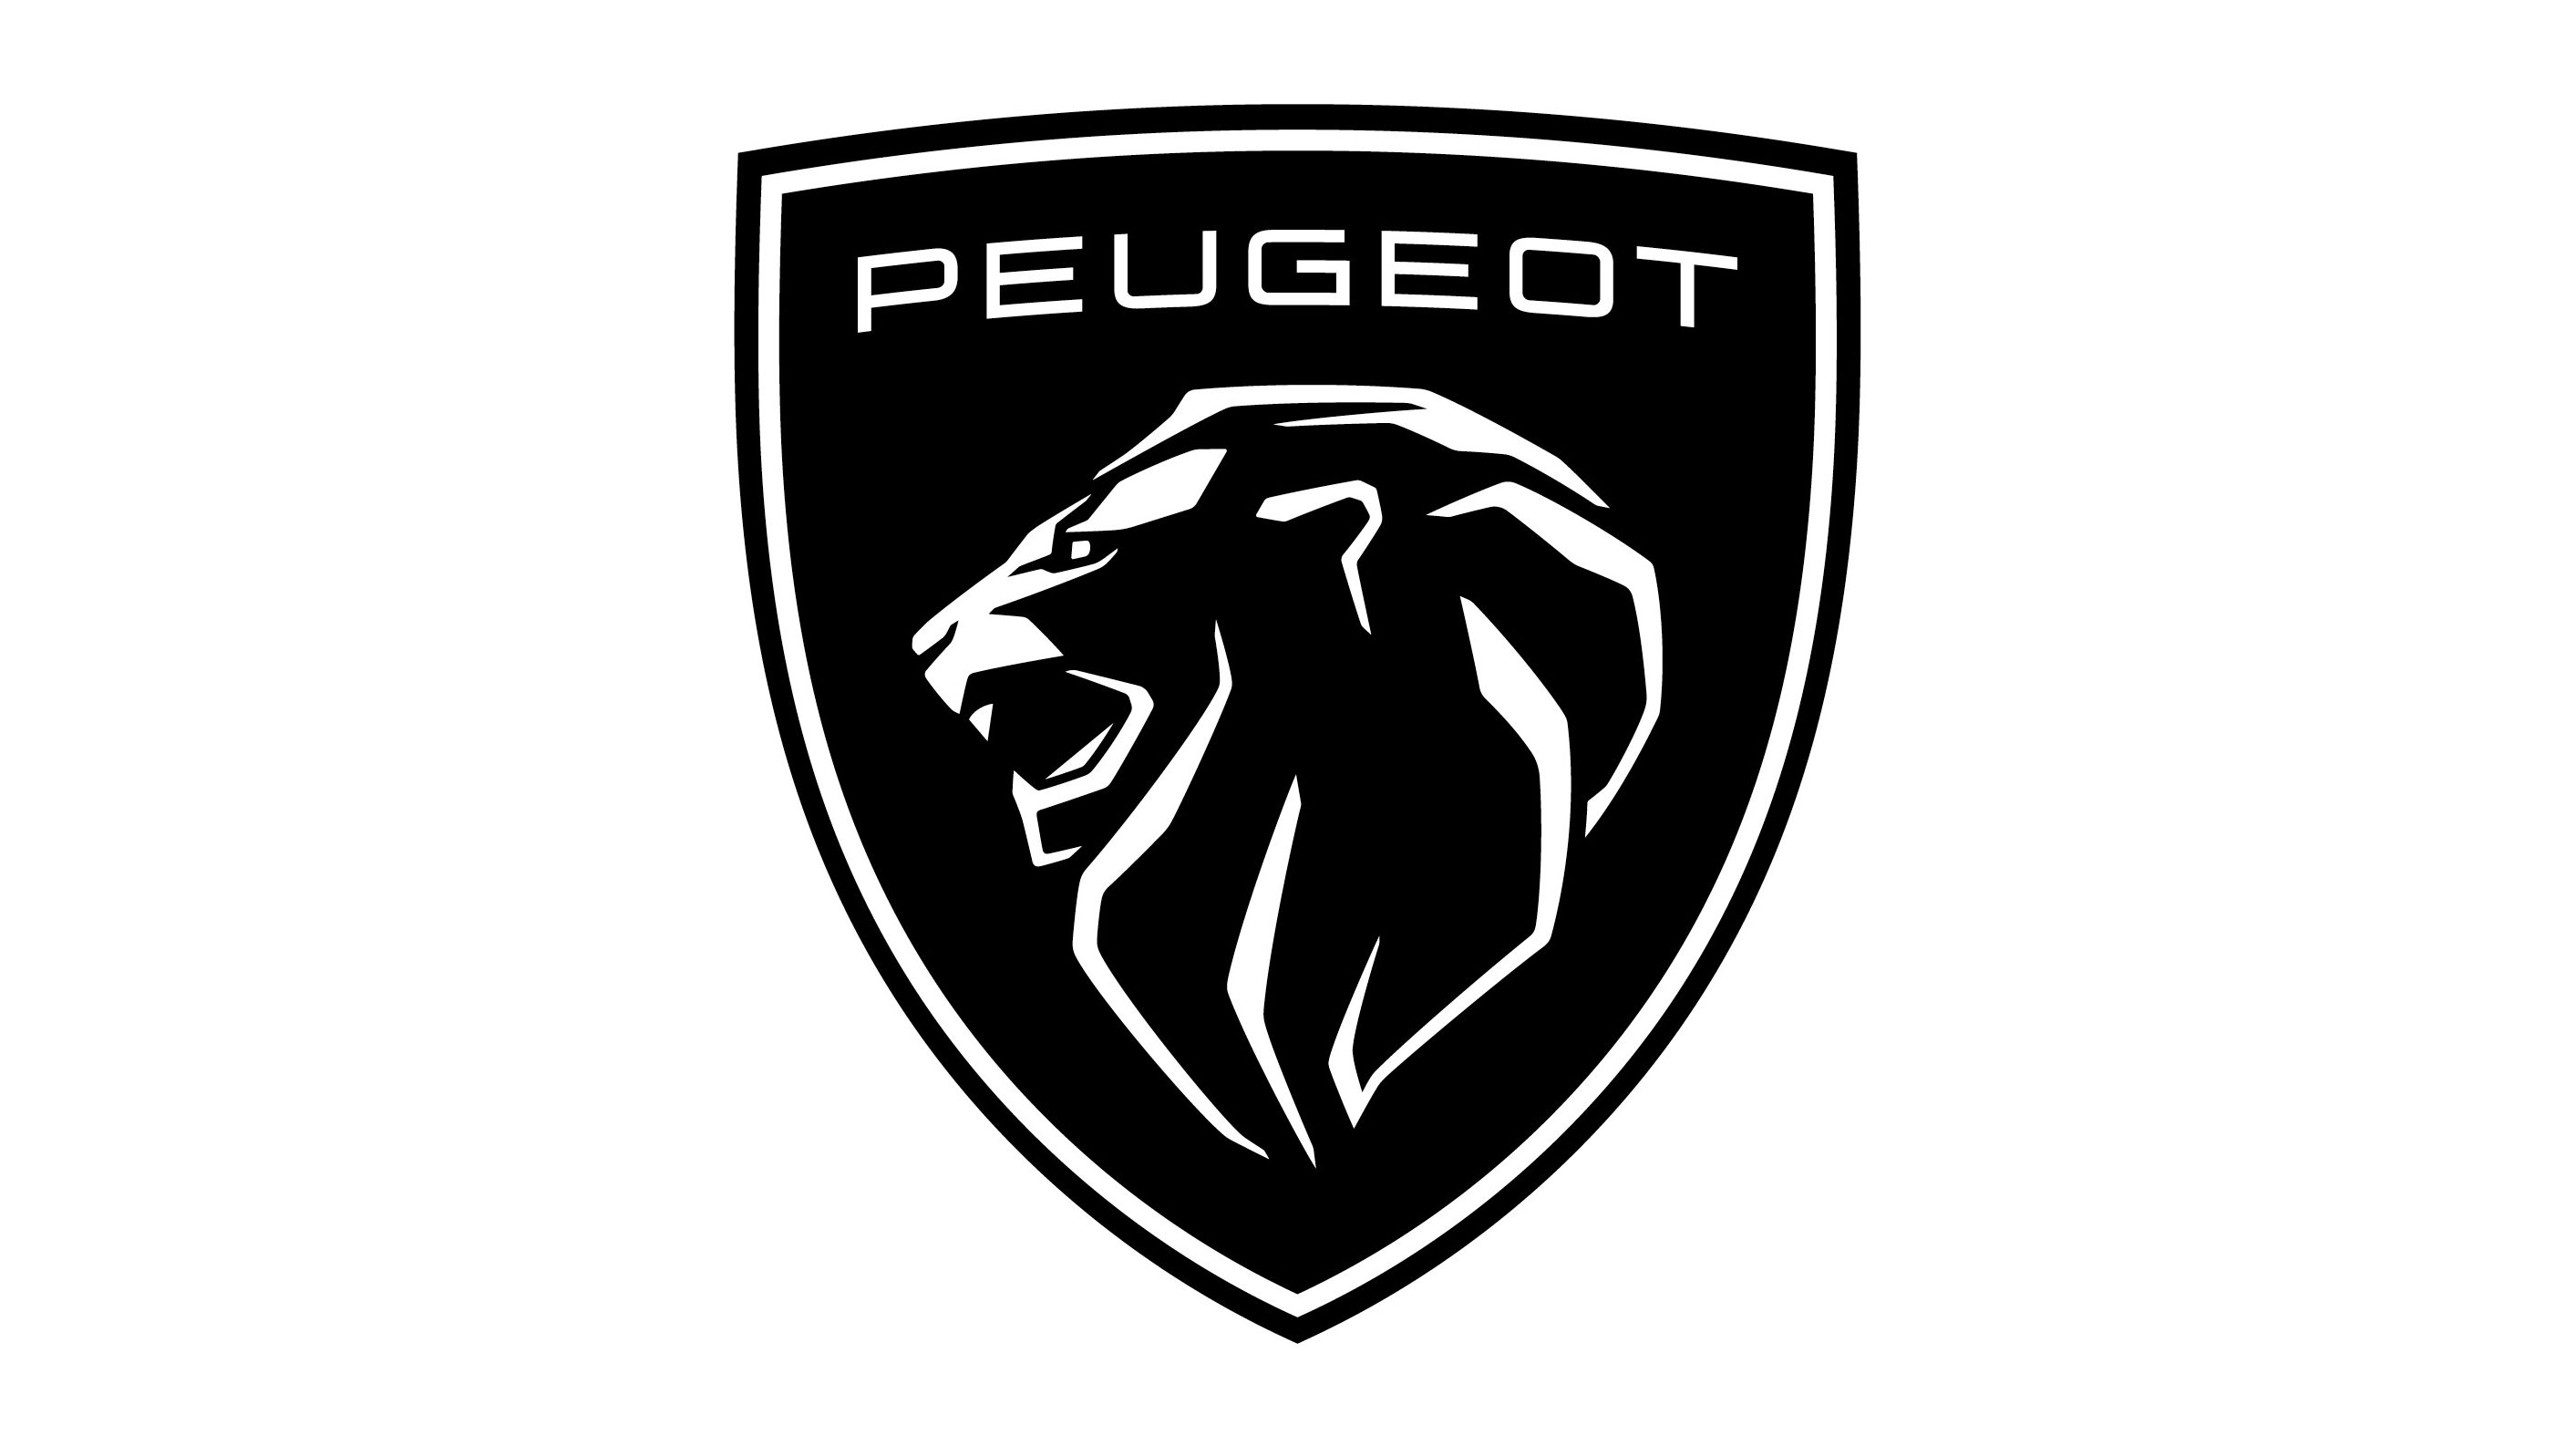 Peugeot revela novo logotipo para se afirmar como marca premium | Quatro  Rodas